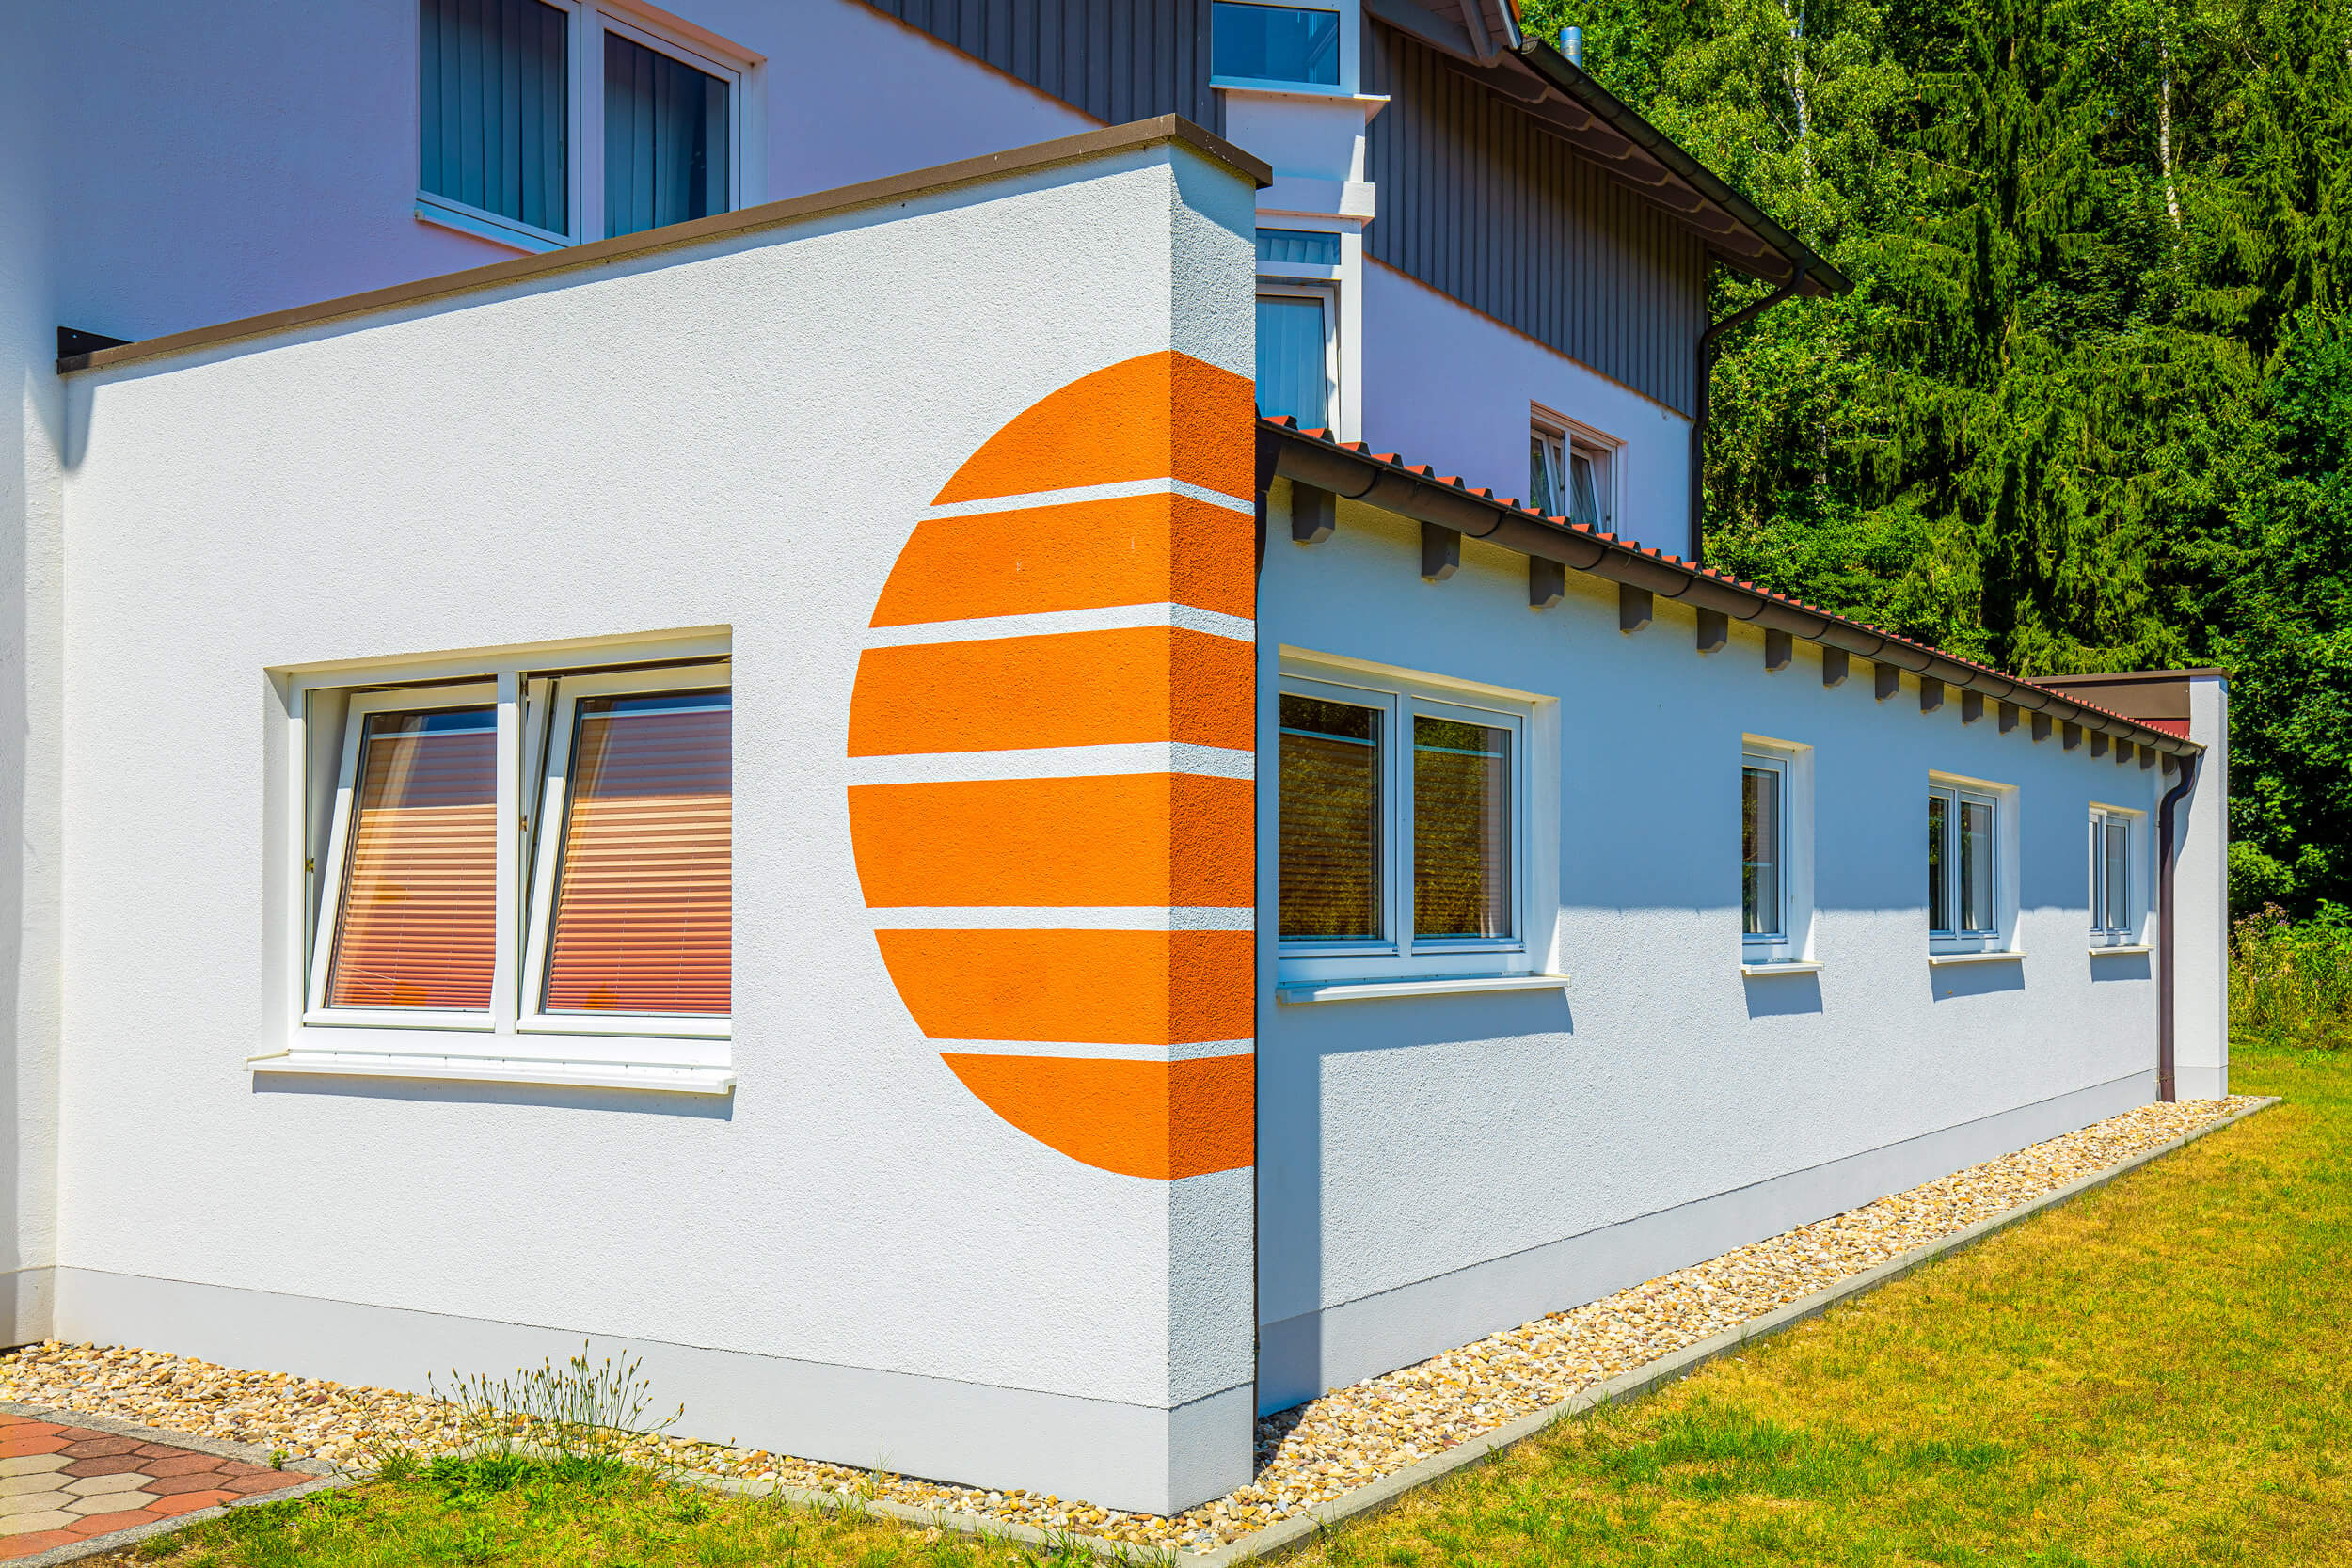 Seitenansicht des Hauses mit Anbau und orangen Streifen in Form einer Sonne